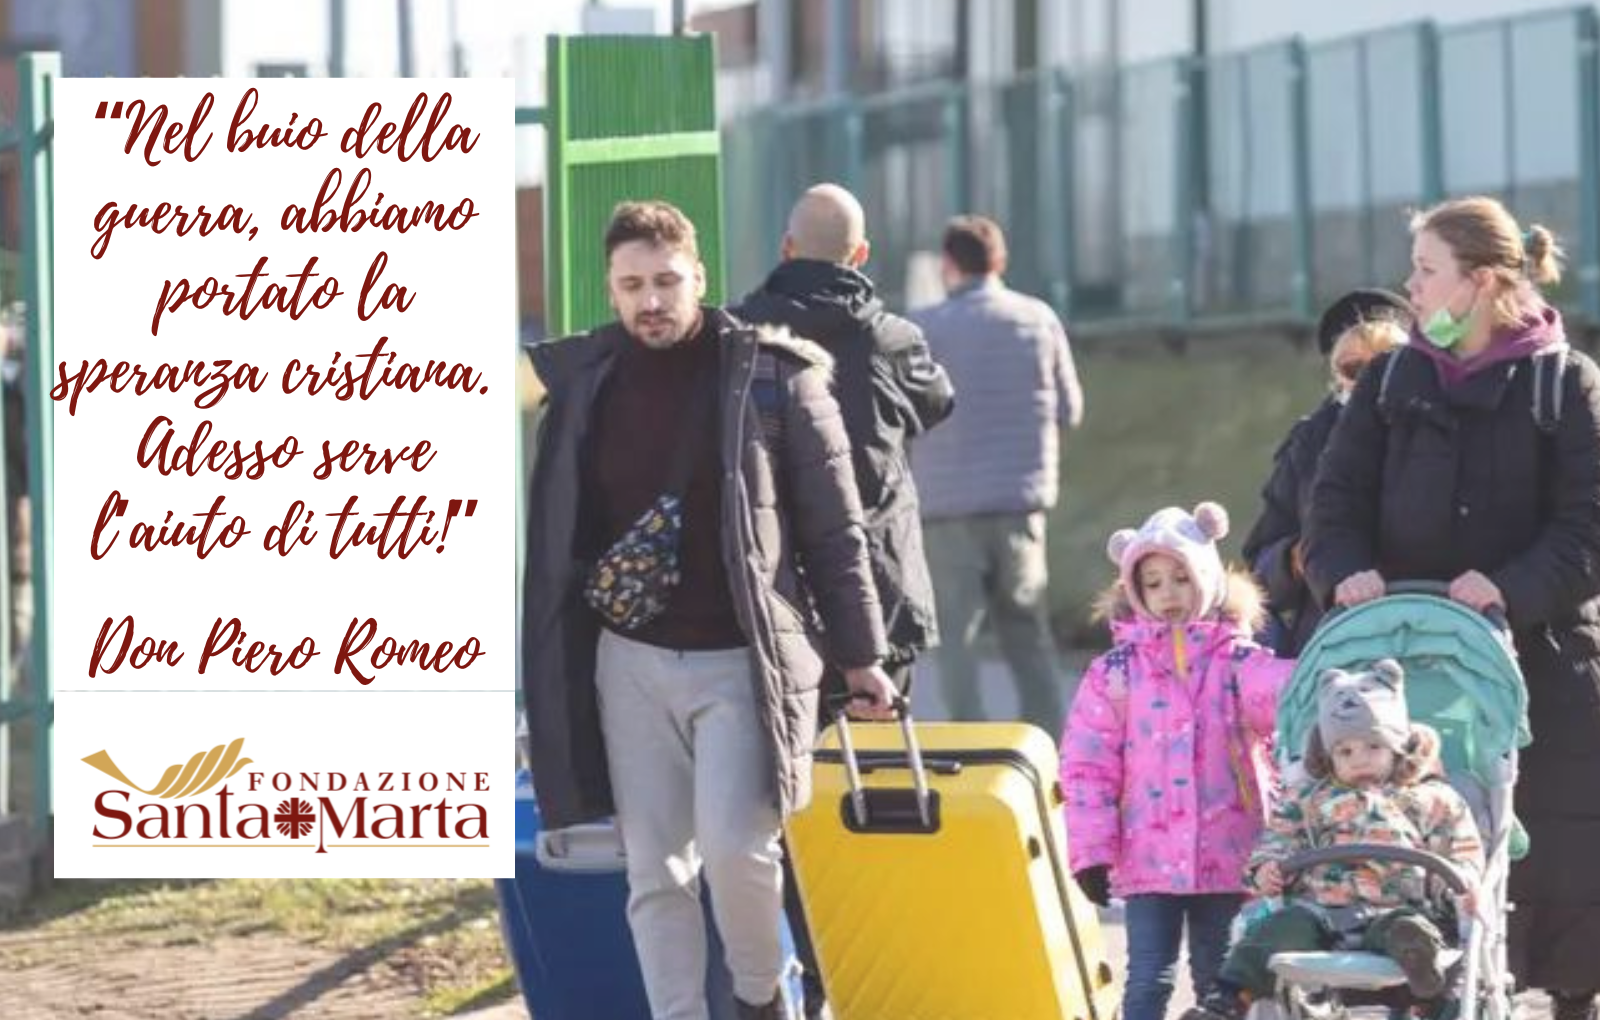 Don Piero Romeo: «Nel buio della guerra, abbiamo portato la speranza cristiana. Adesso serve l’aiuto di tutti»